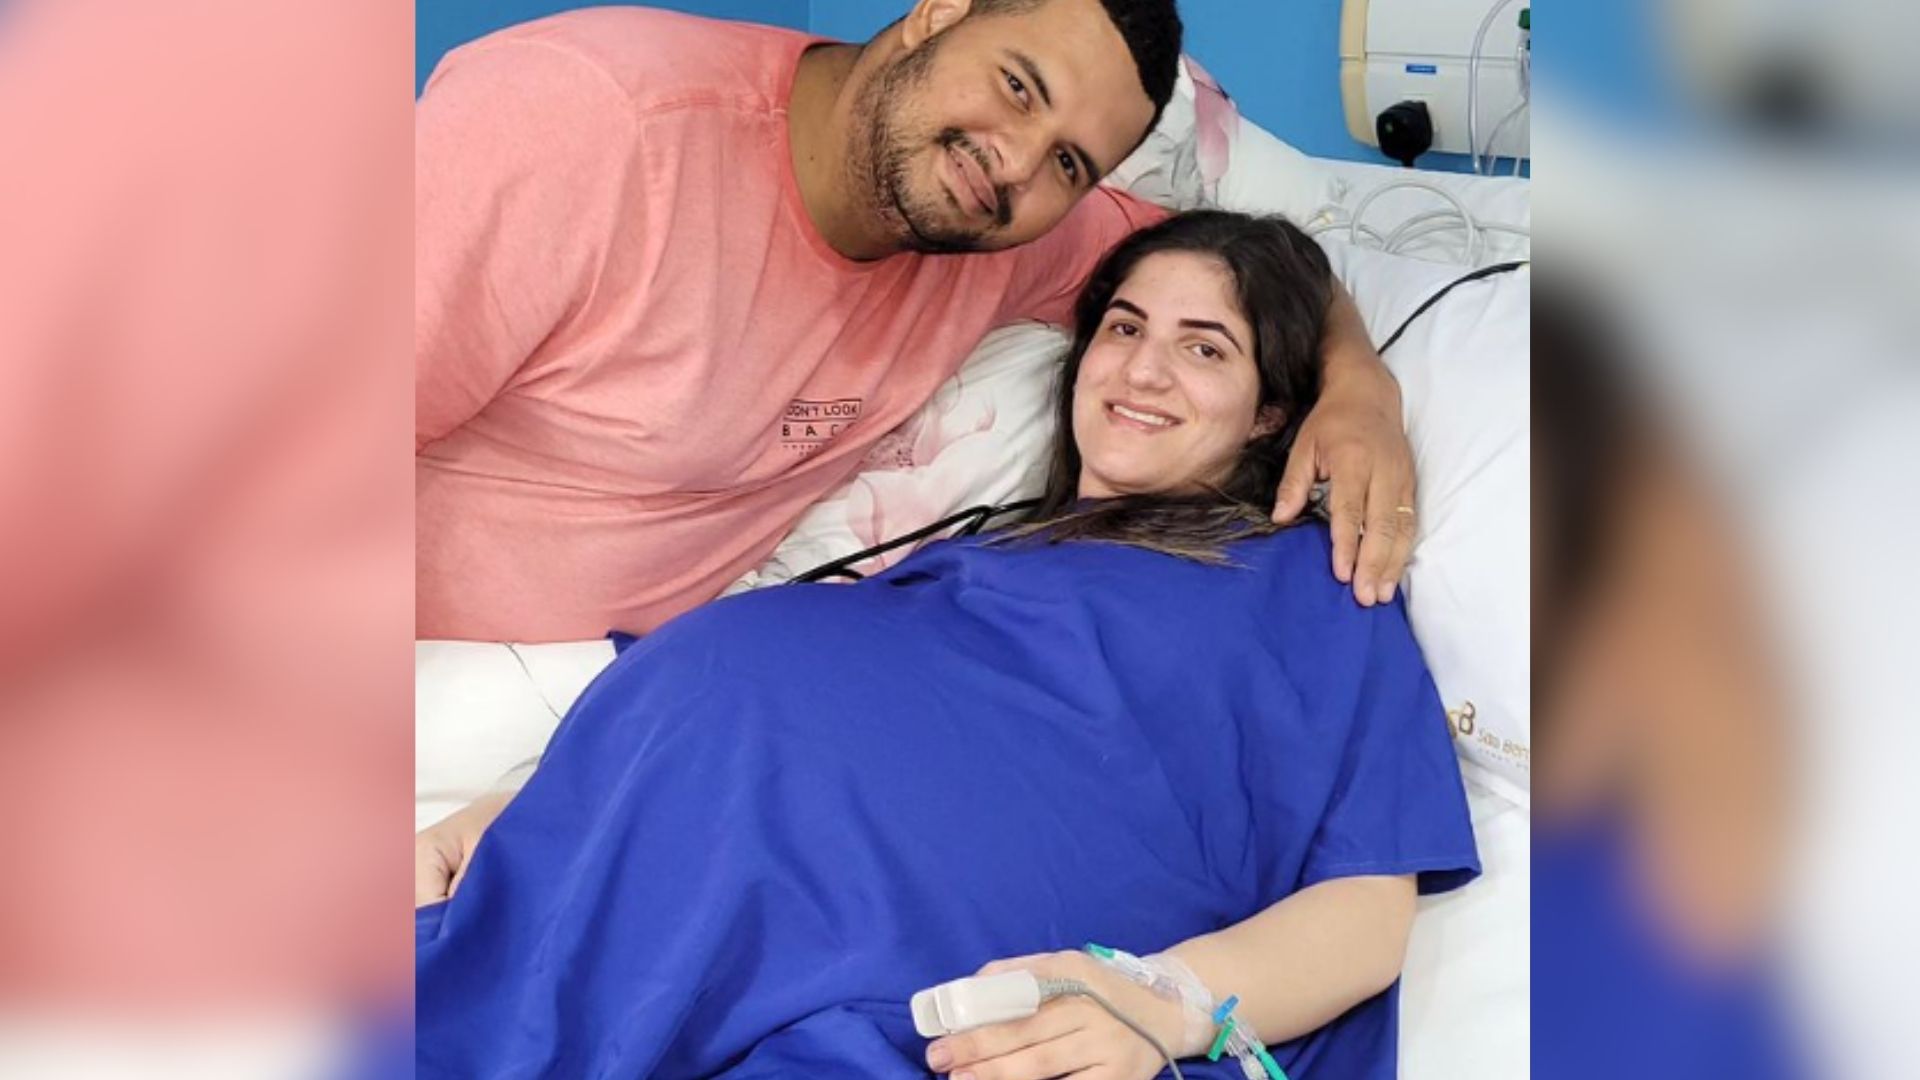 Família anunciou em redes sociais que parto será às 17h, no São Bernardo Apart Hospital, no mesmo município, onde a mãe está internada desde o dia 5 de setembro